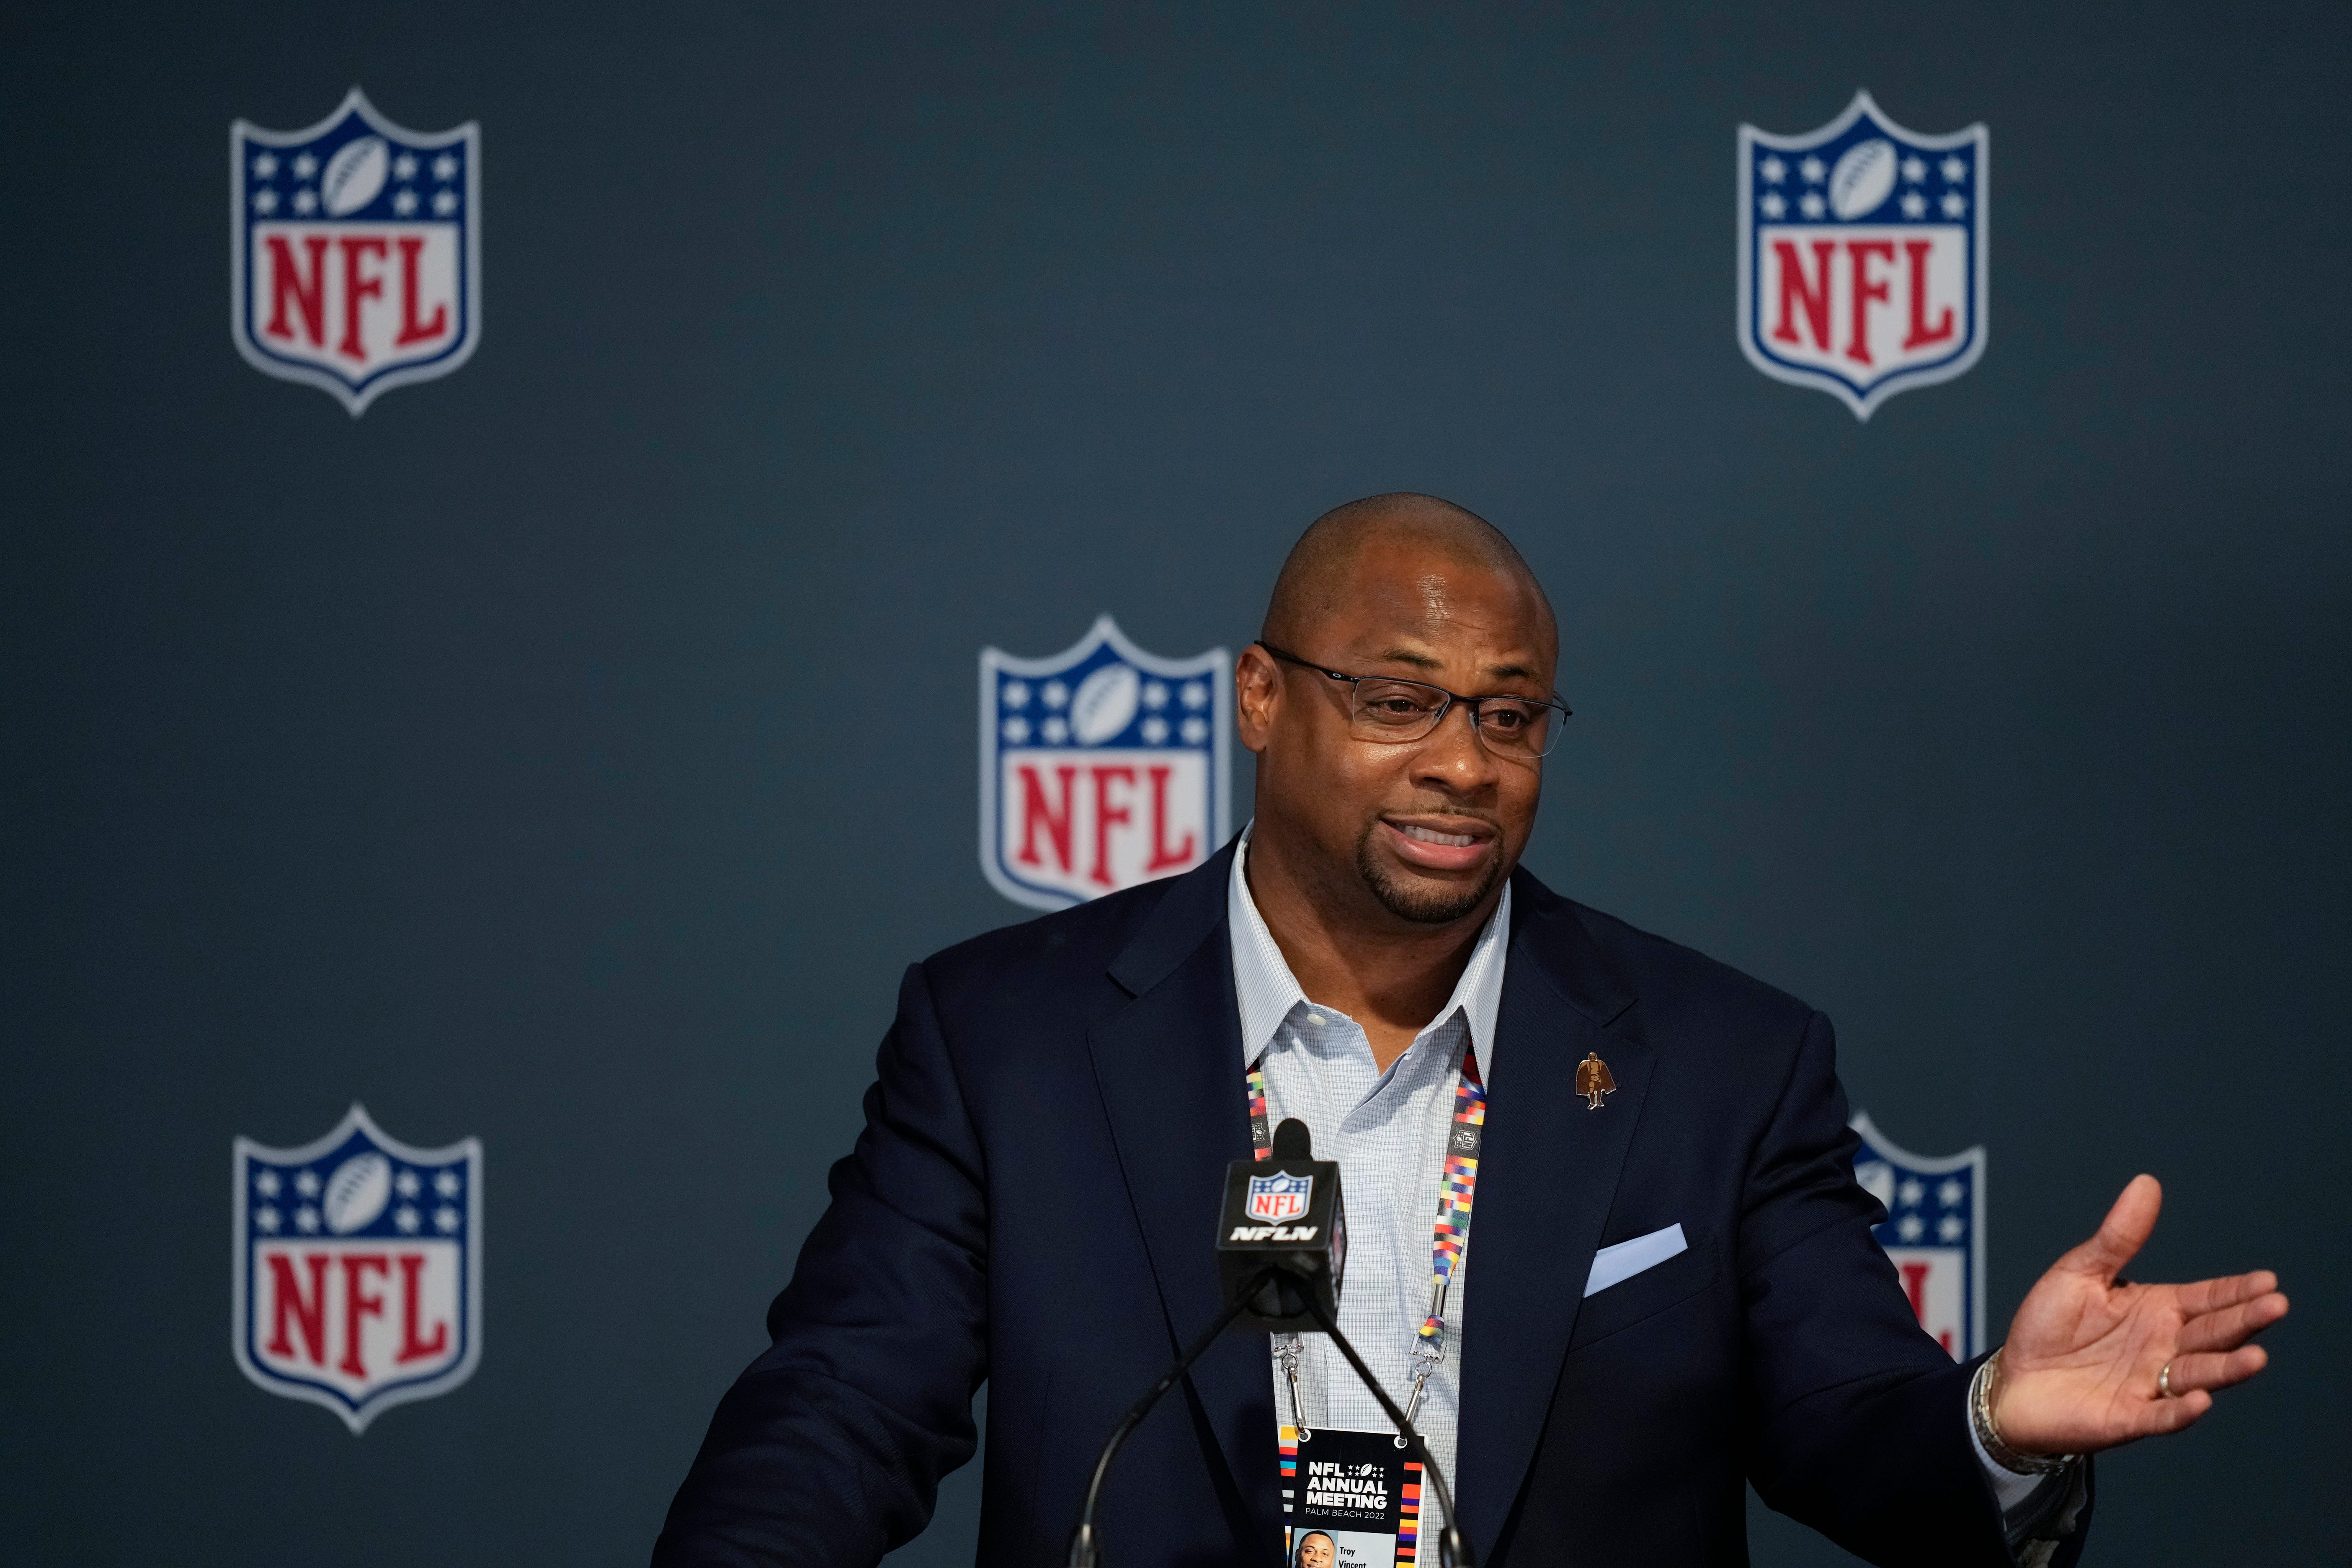 Troy Vincent, Executive Vice President Football Operations van de NFL, heeft in de frontlinie gestaan ​​om de diversiteit in de NFL te verbeteren.